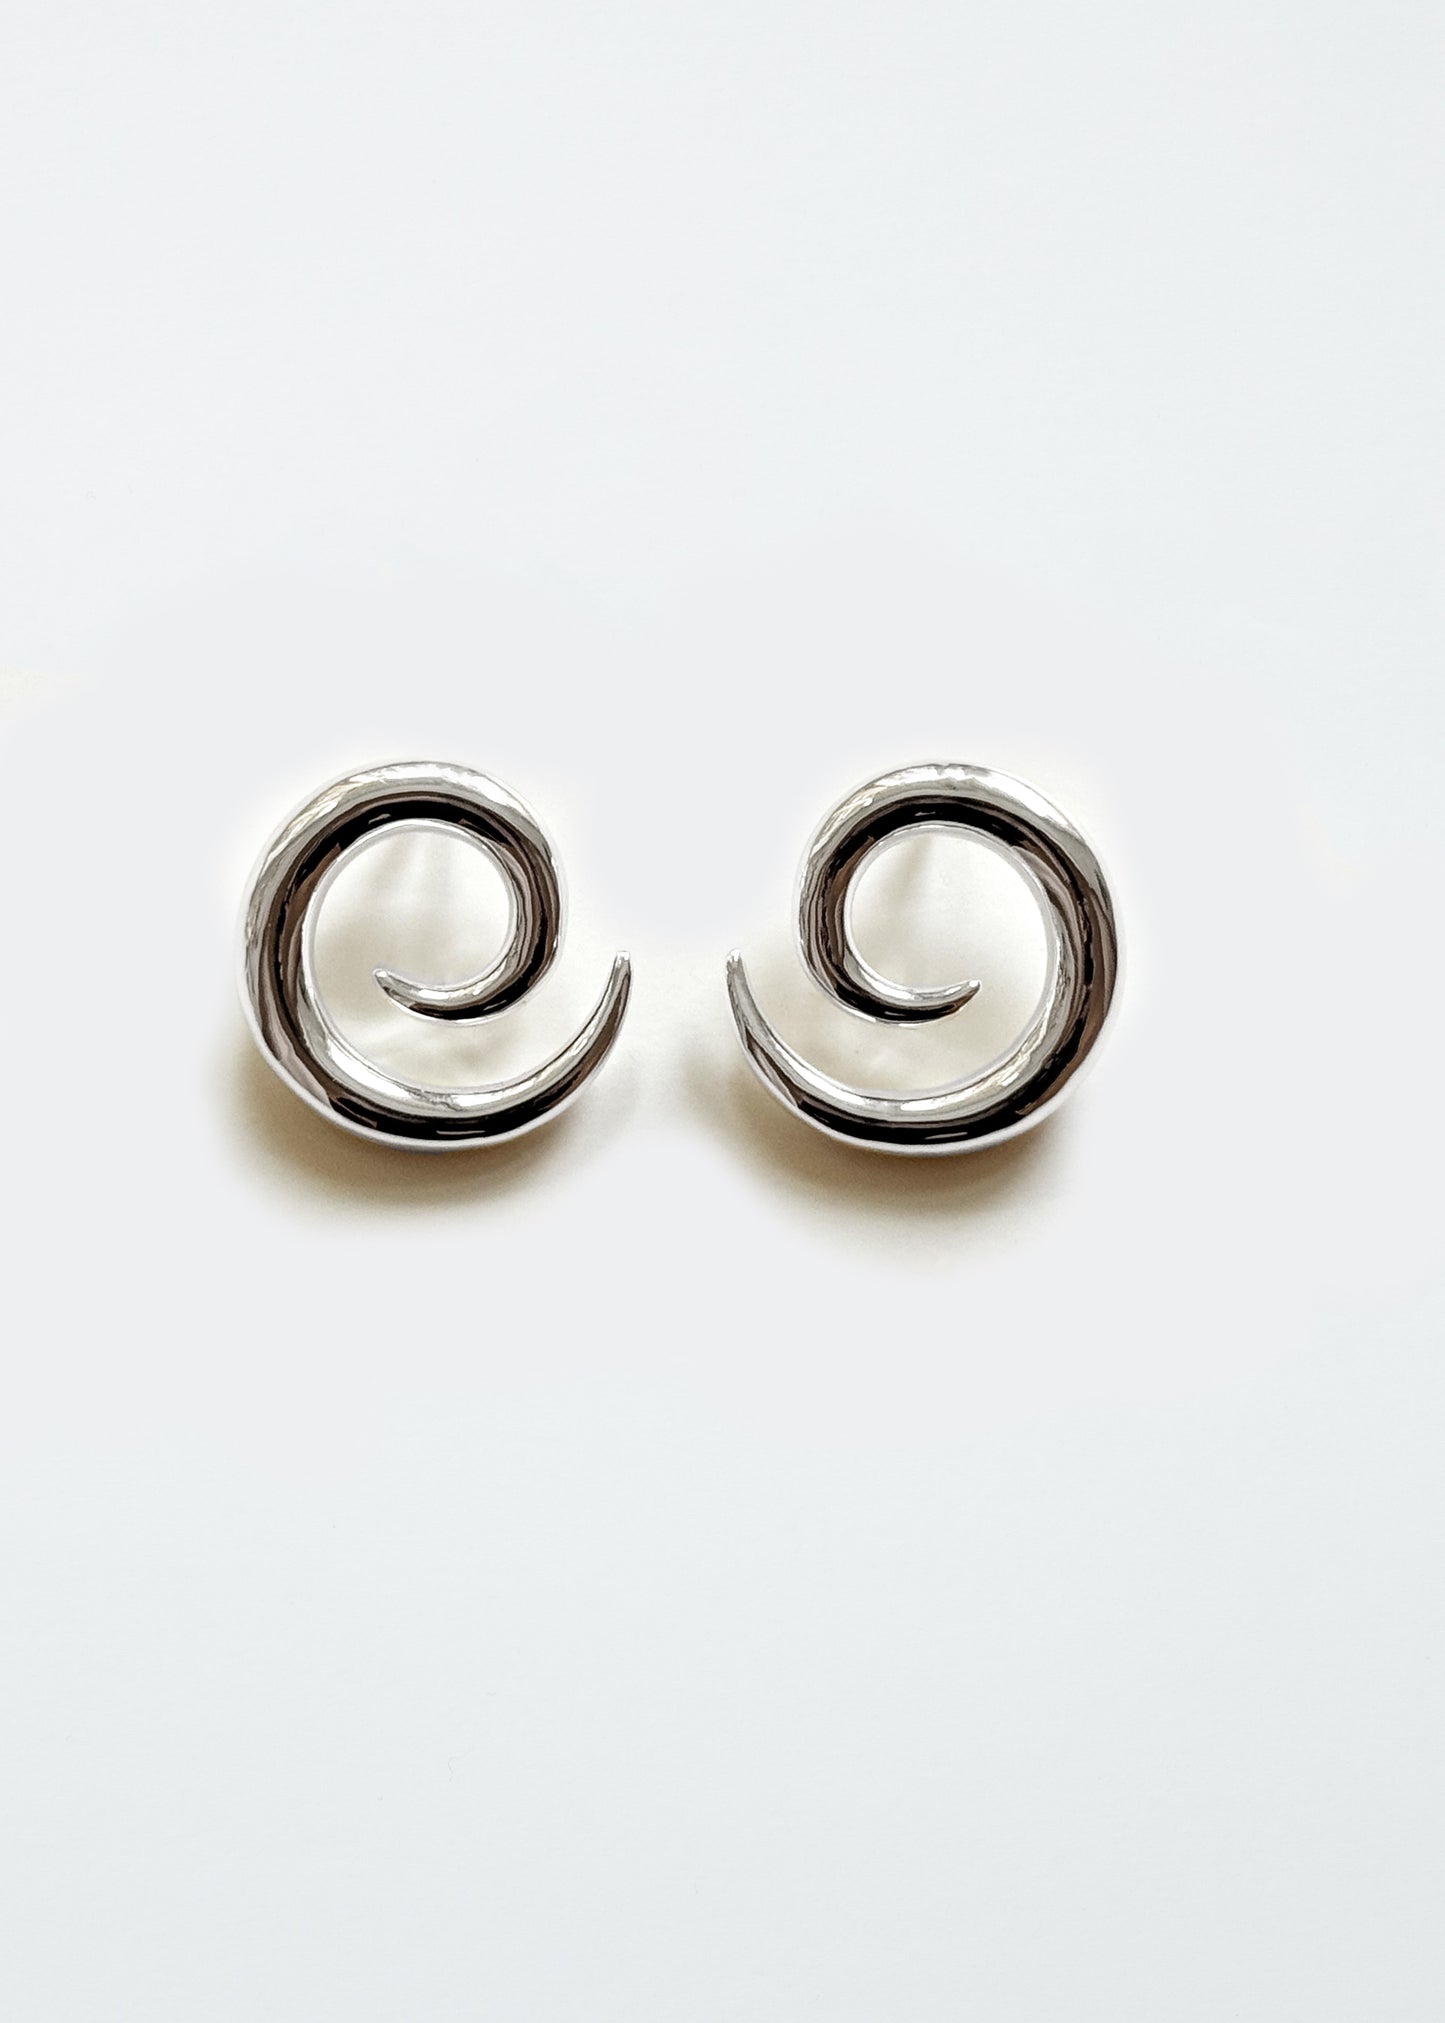 Spiral earrings - Silver - Pair